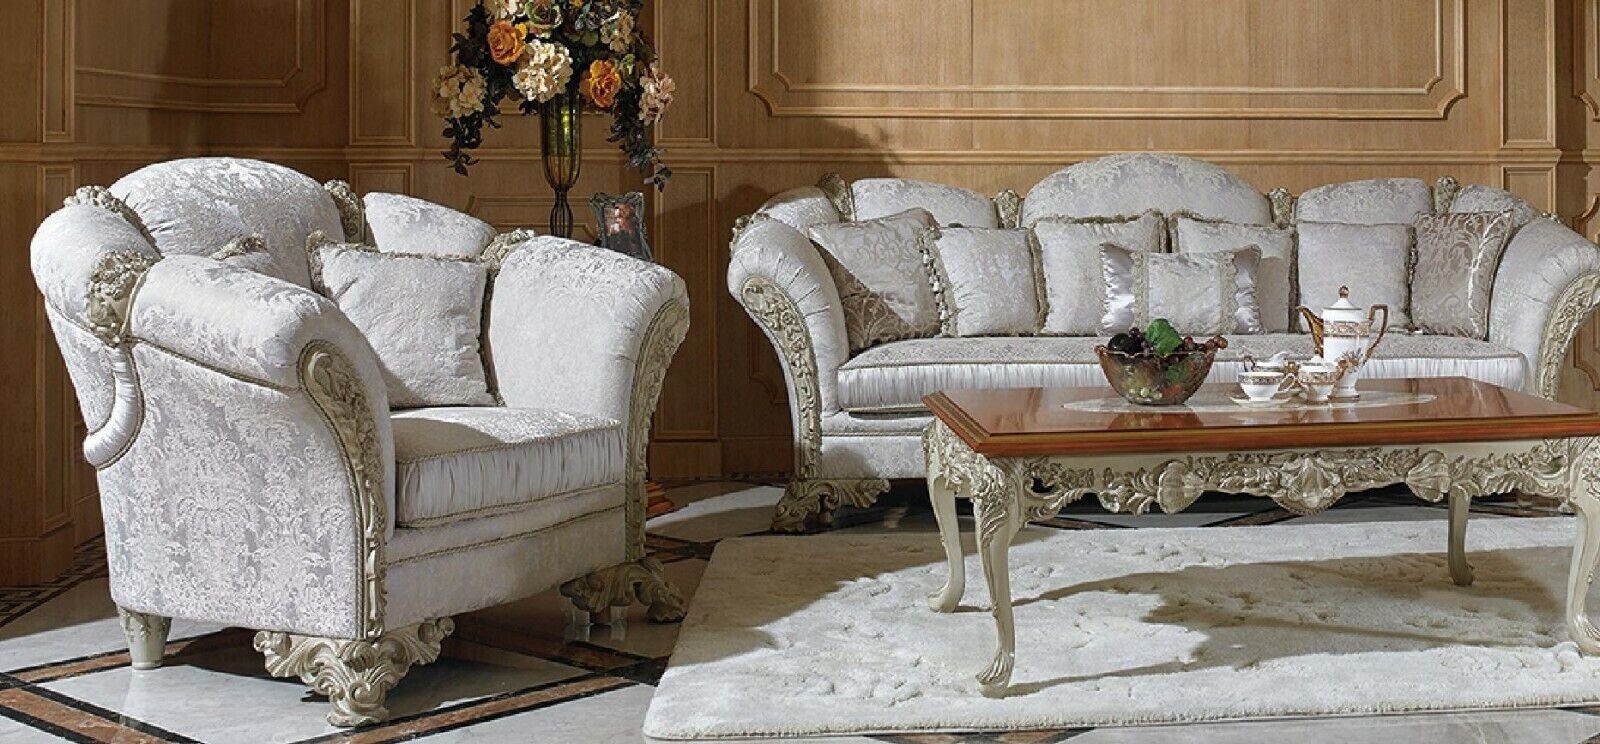 JVmoebel Sofa, 3+1 Sofagarnitur Couch Garnitur Garnituren Polster Sofa Königliche